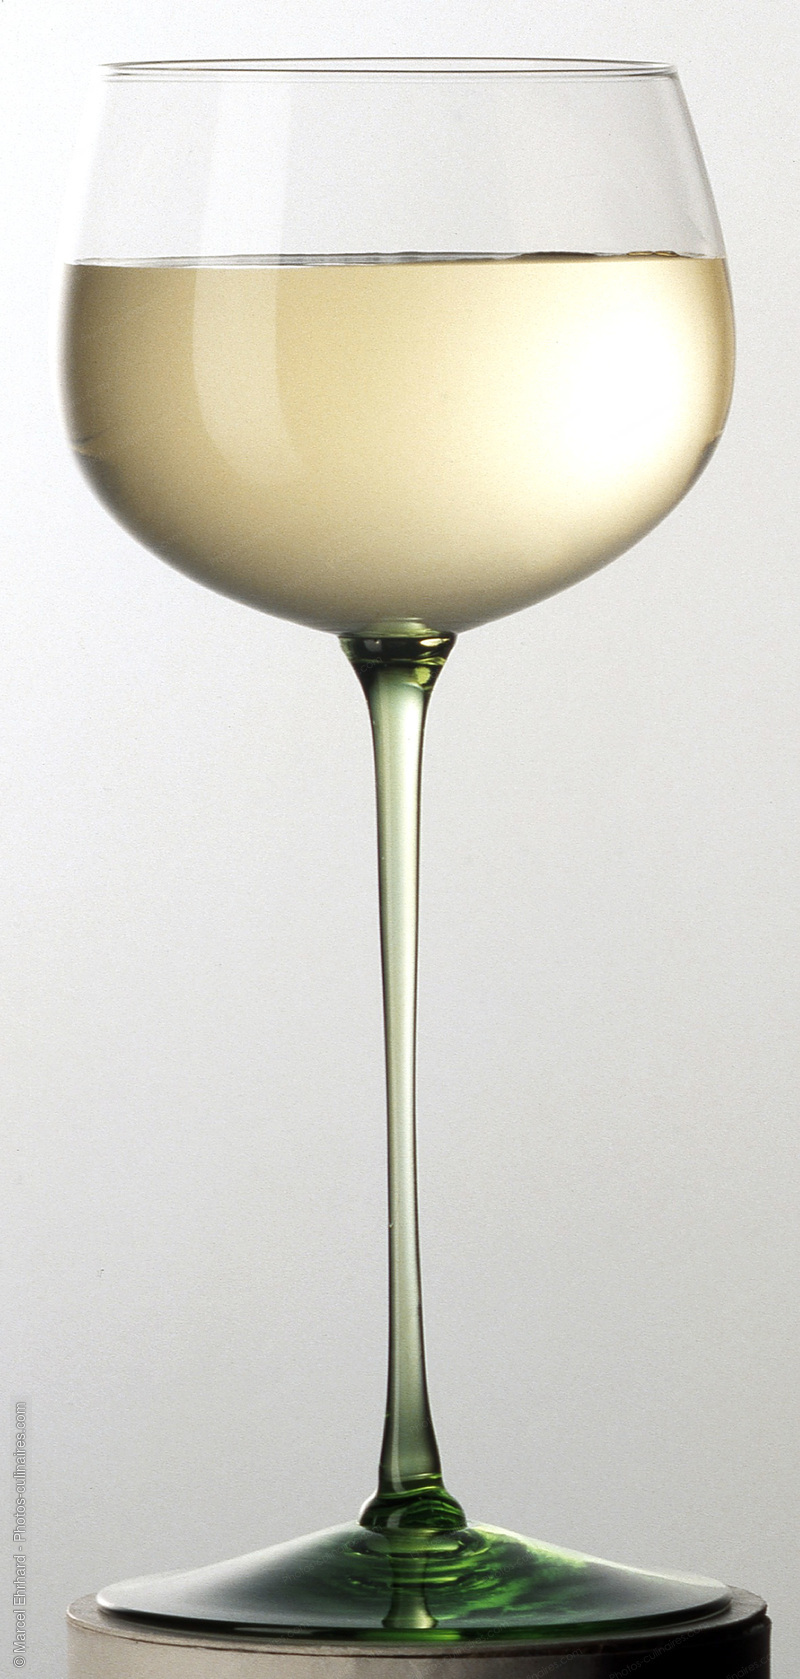 Verre de vin blanc d'alsace - photo référence BO39.jpg